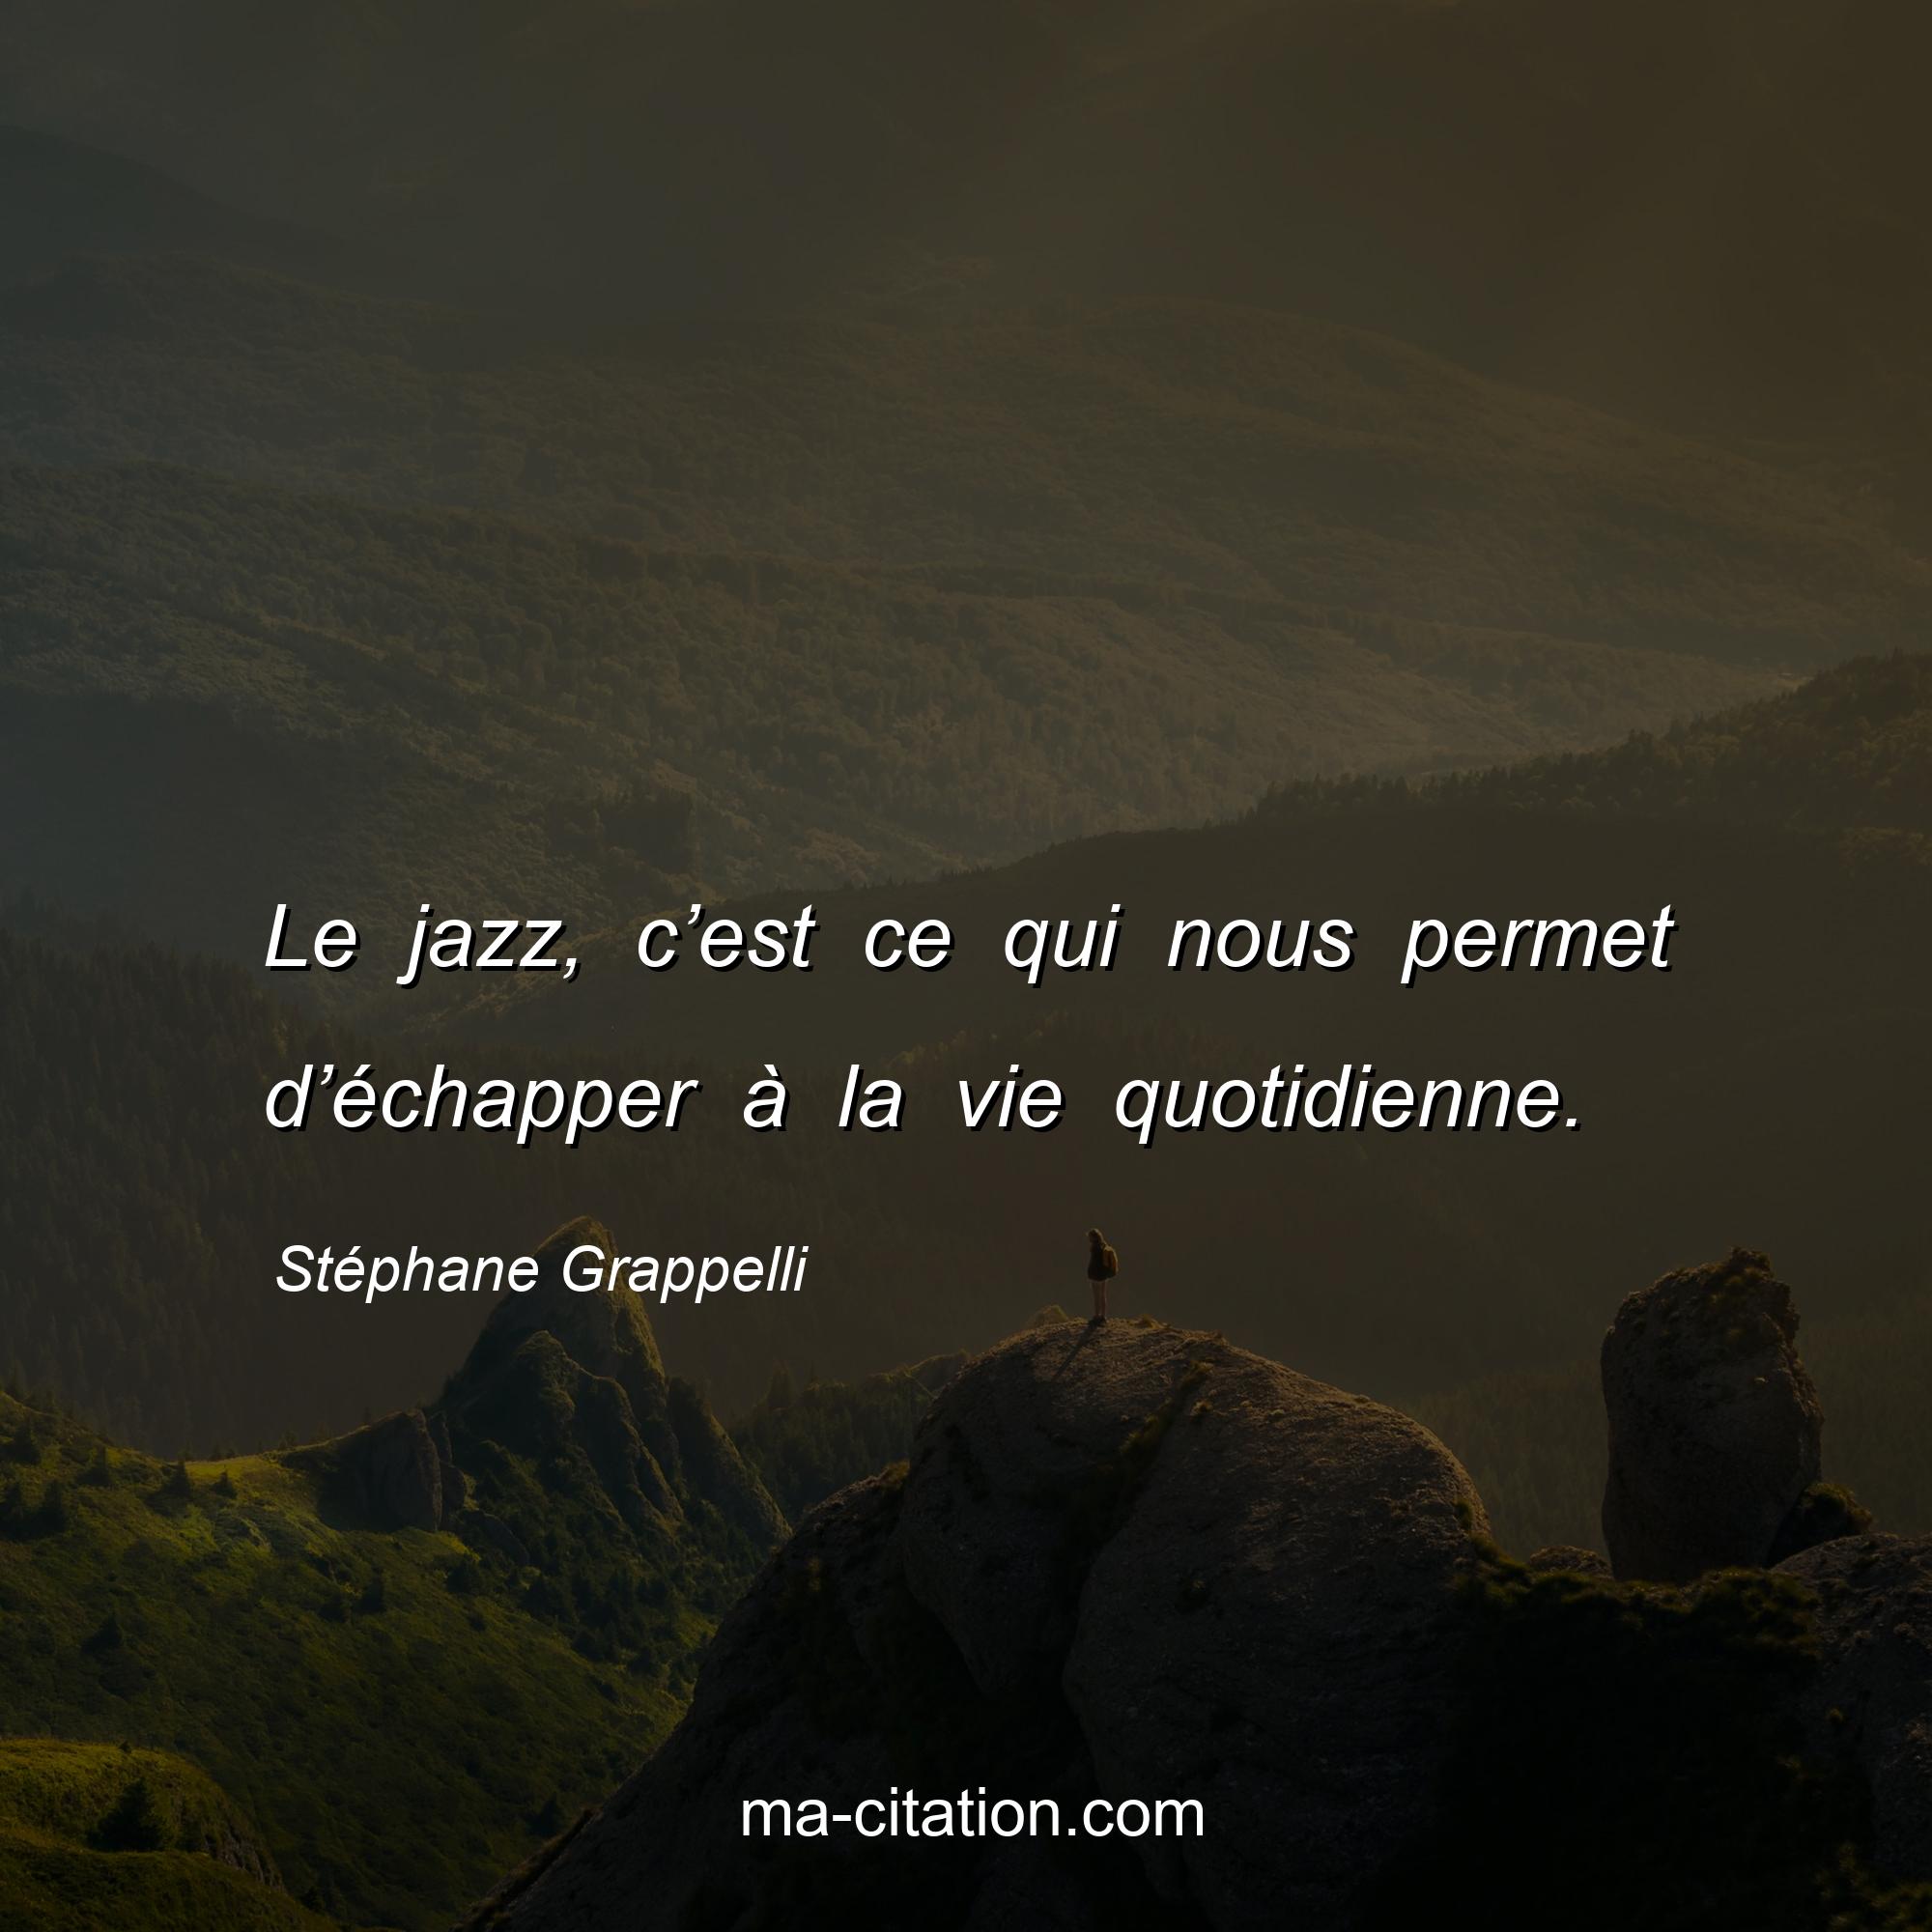 Stéphane Grappelli : Le jazz, c’est ce qui nous permet d’échapper à la vie quotidienne.